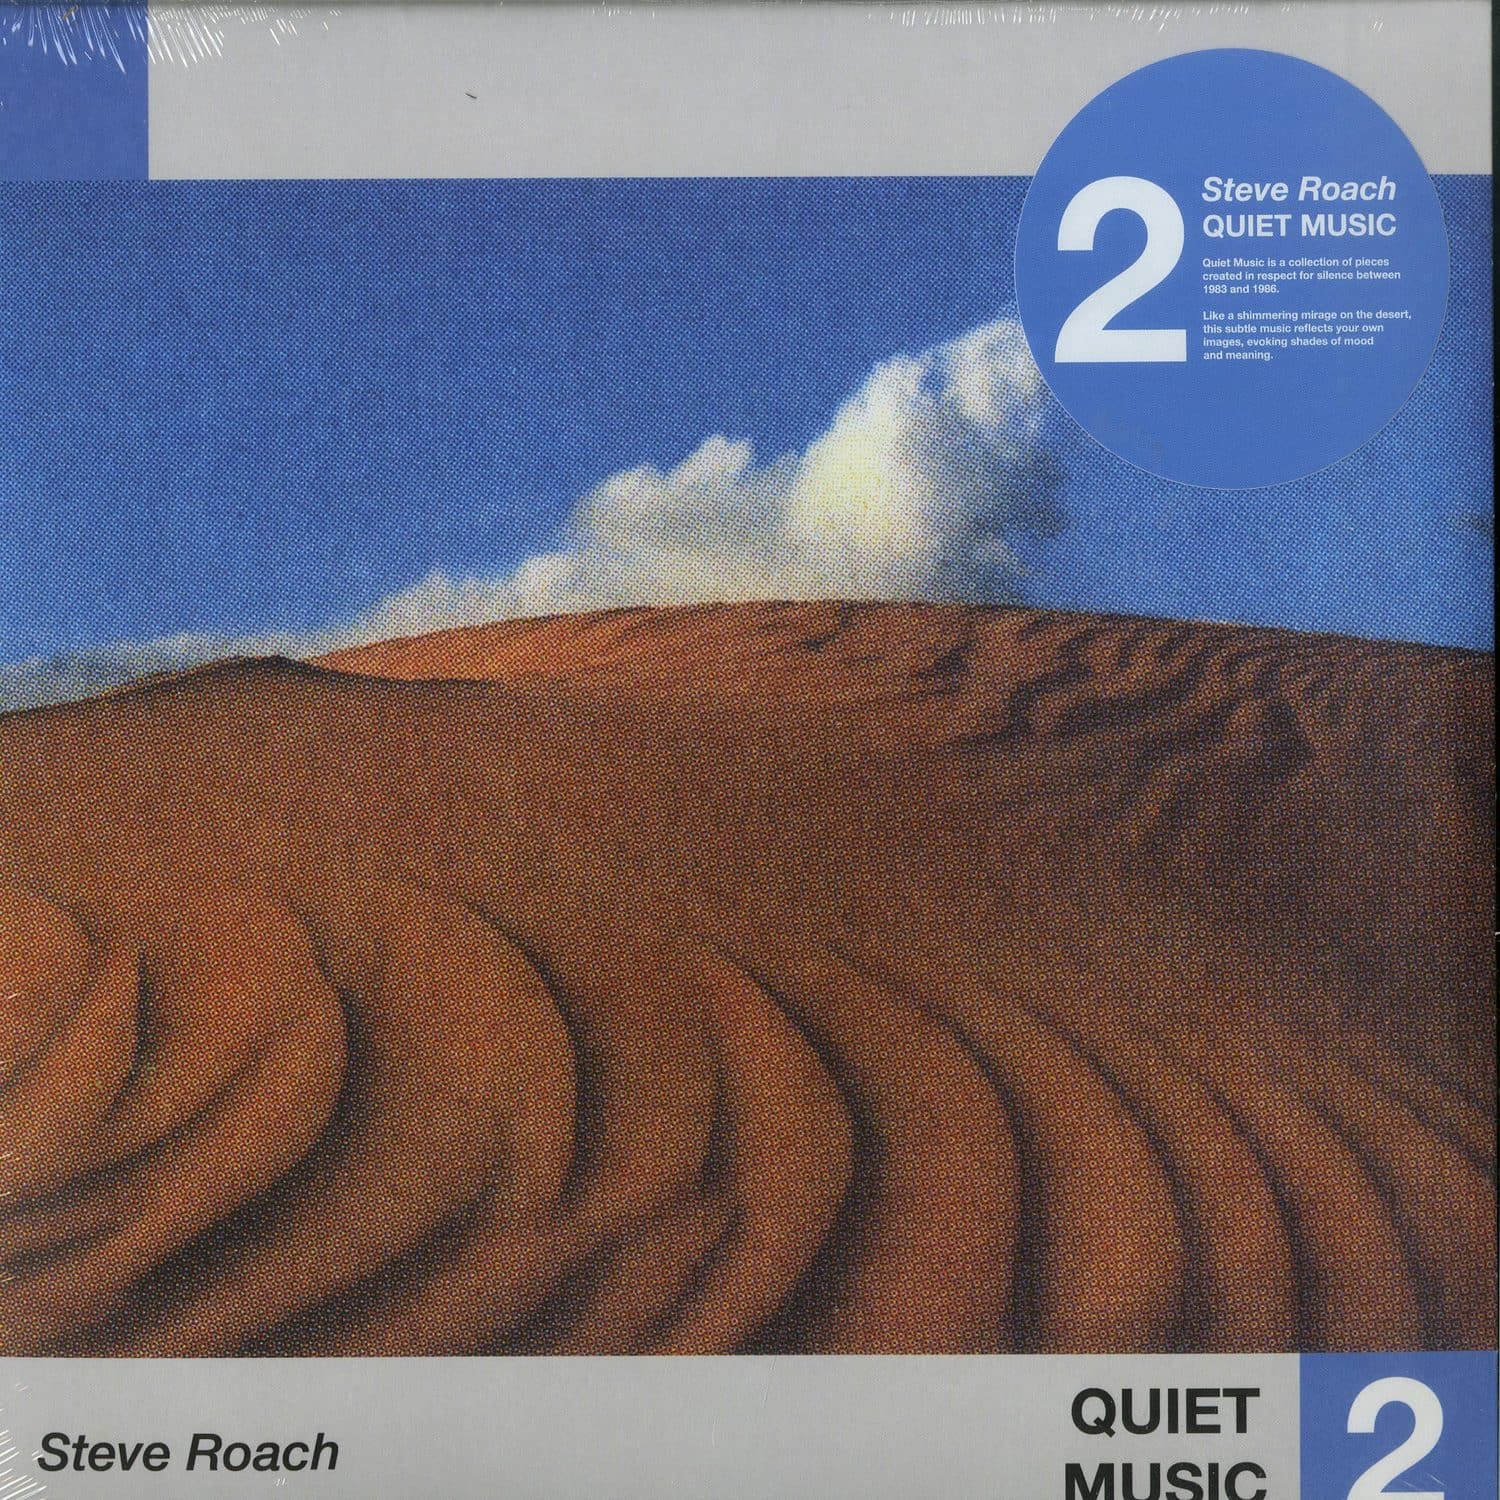 Steve Roach - QUIET MUSIC 2 